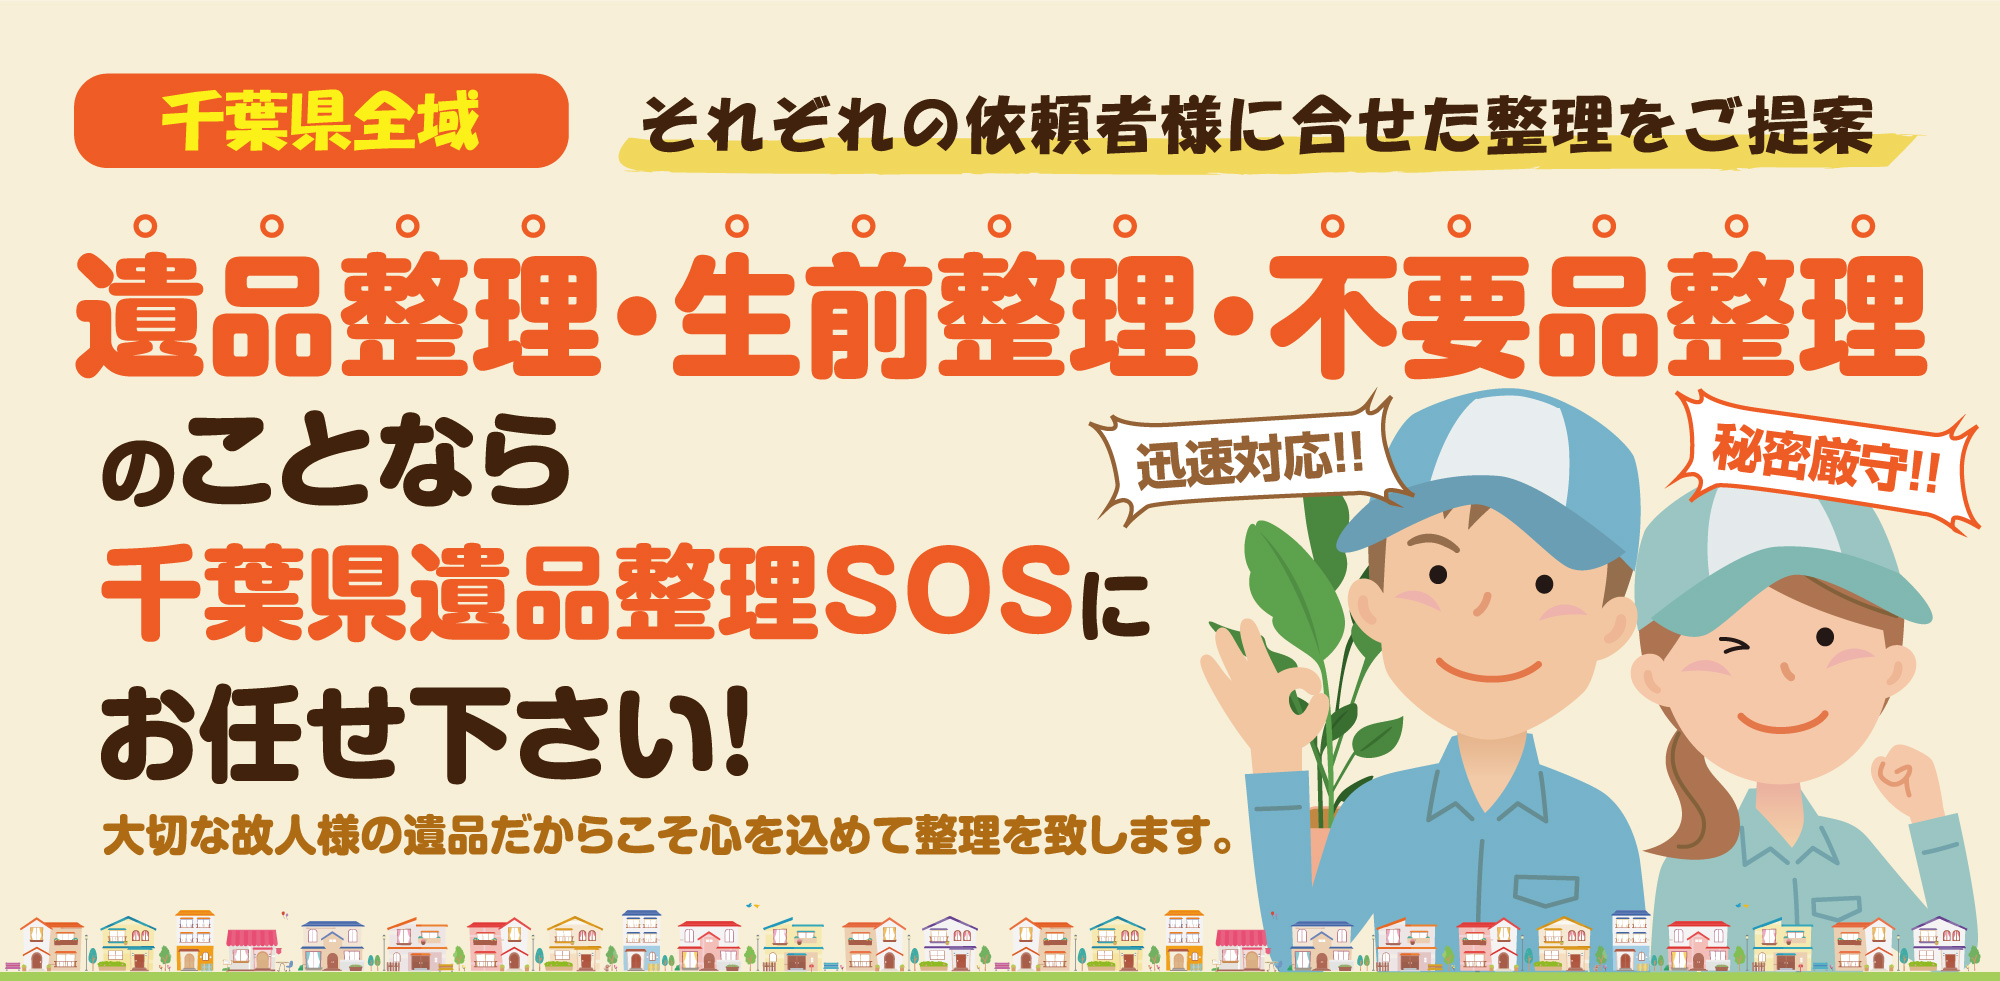 遺品整理・生前整理・不要品整理のことなら千葉県遺品整理SOSにお任せください!大切な故人様の遺品だからこそ心を込めて整理を致します。